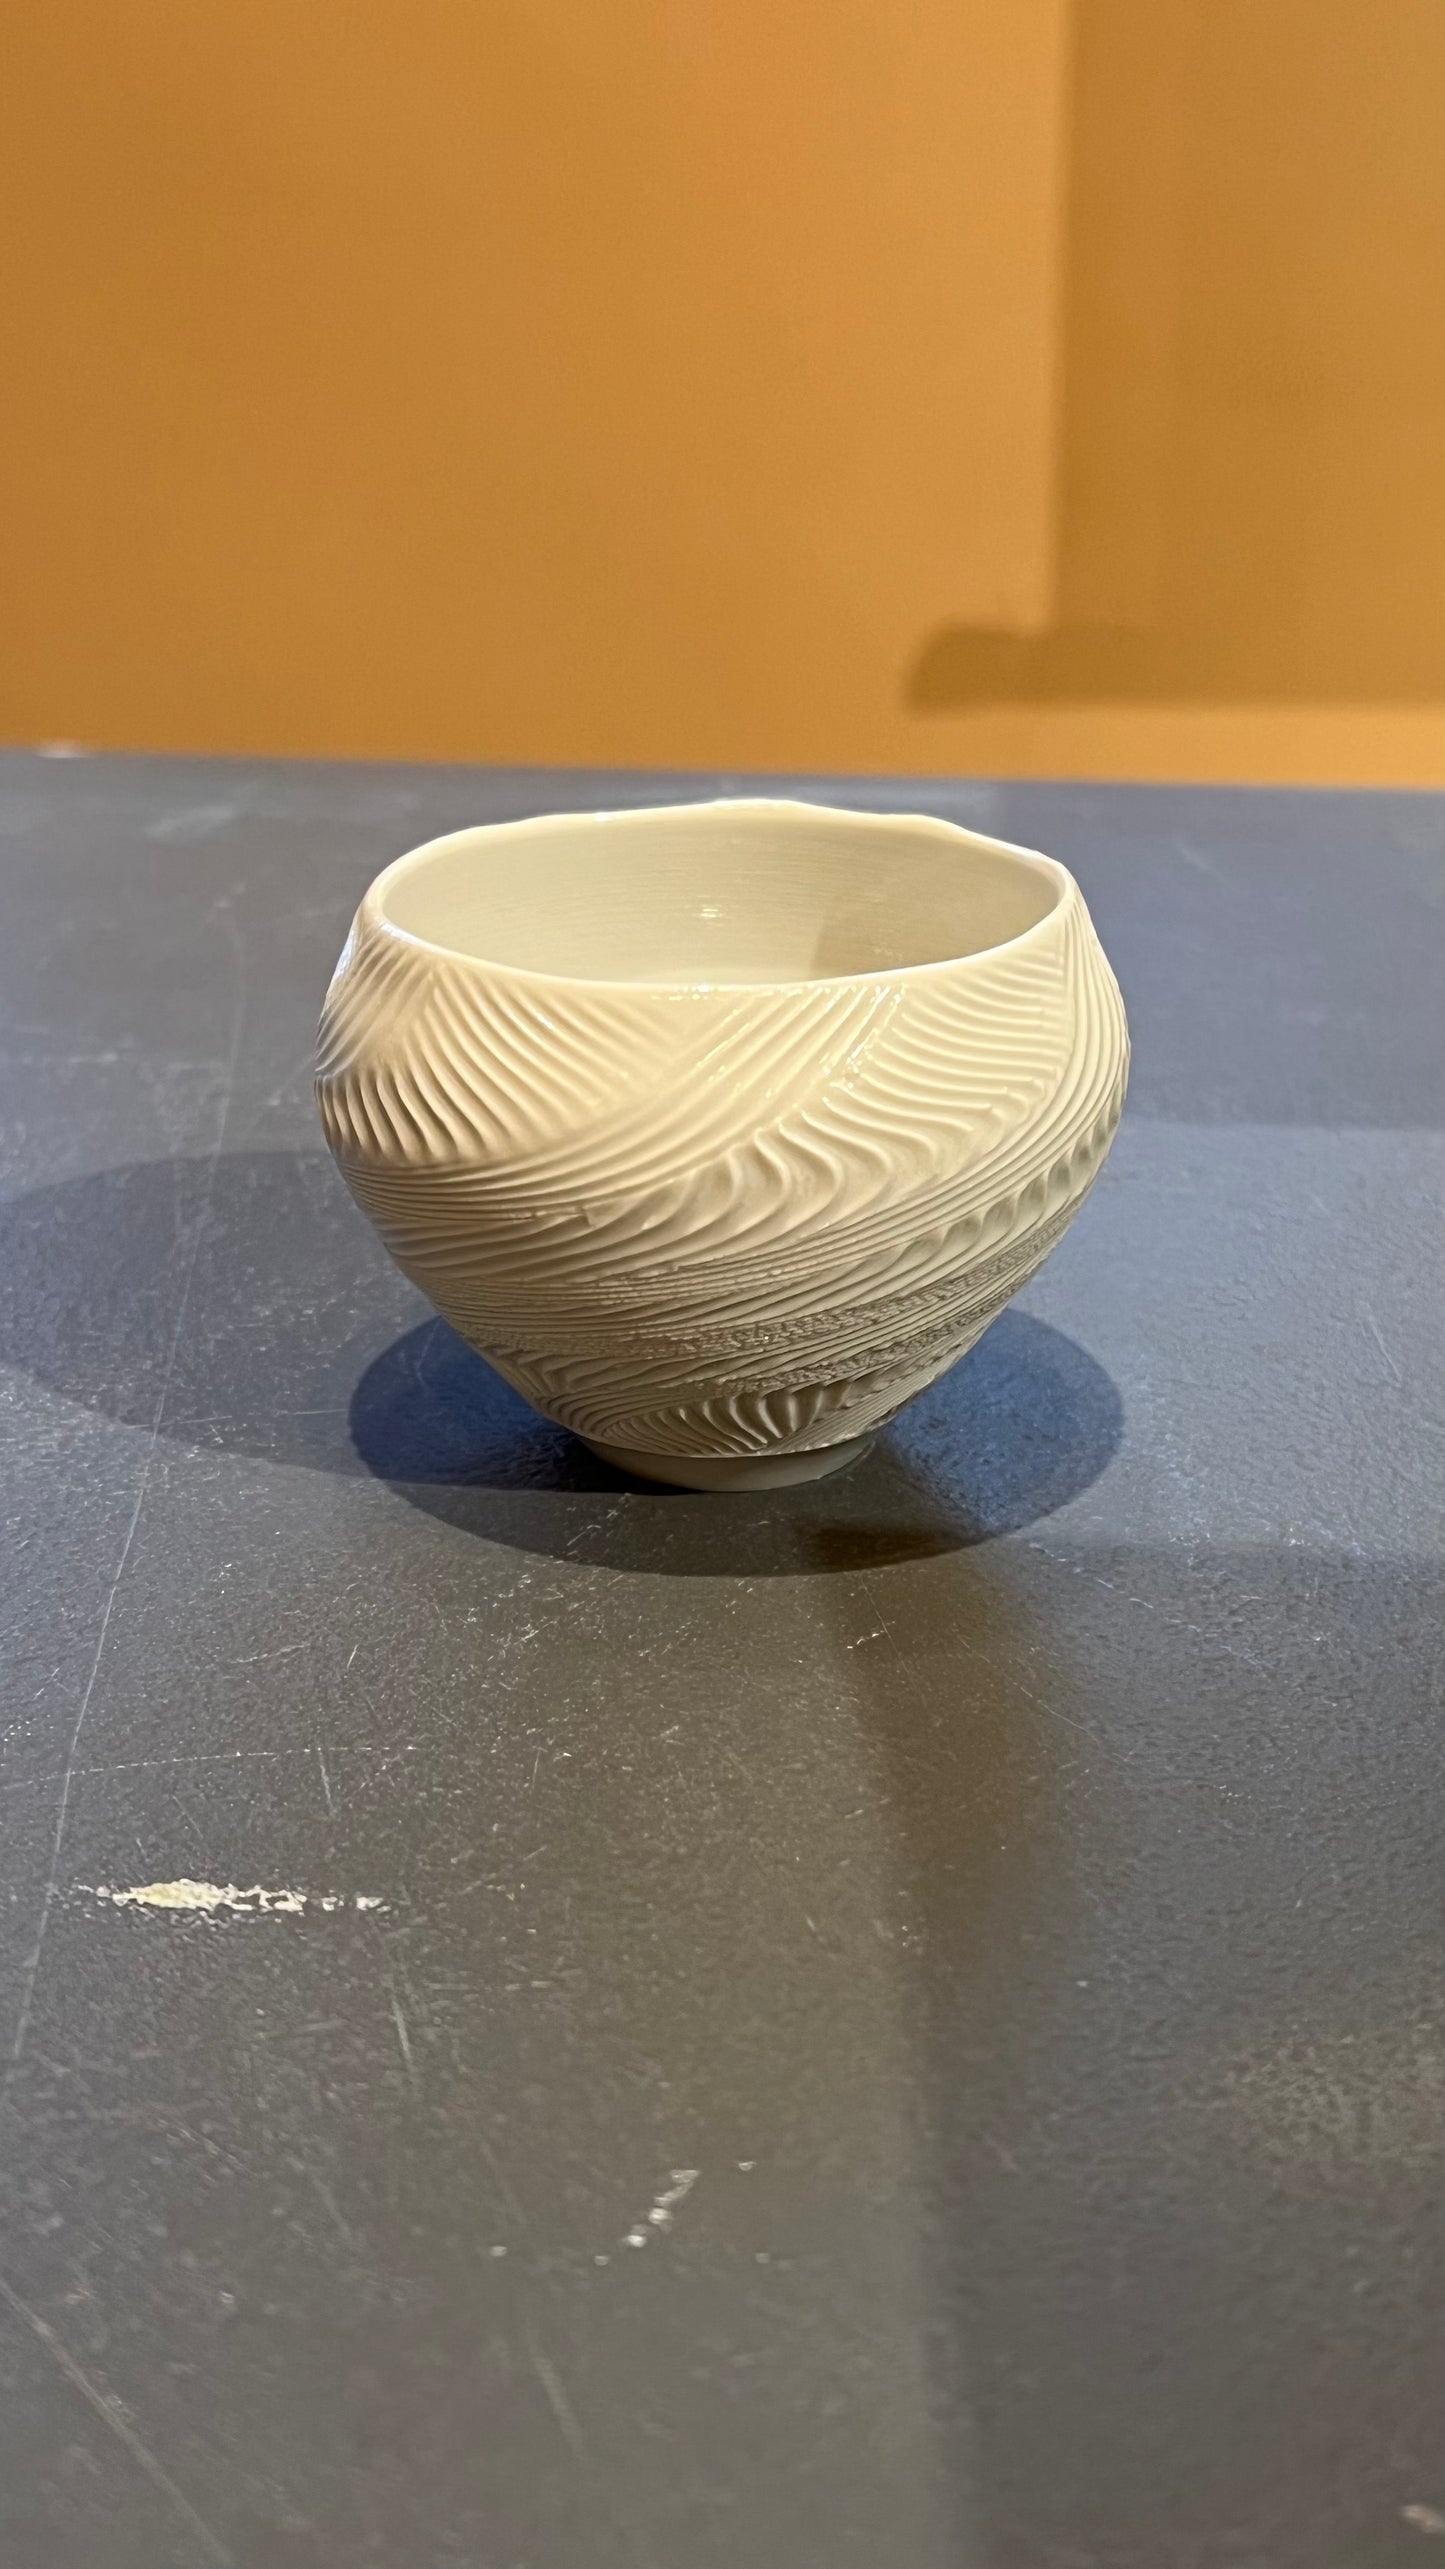 36. Porcelain Spiral Cup IV